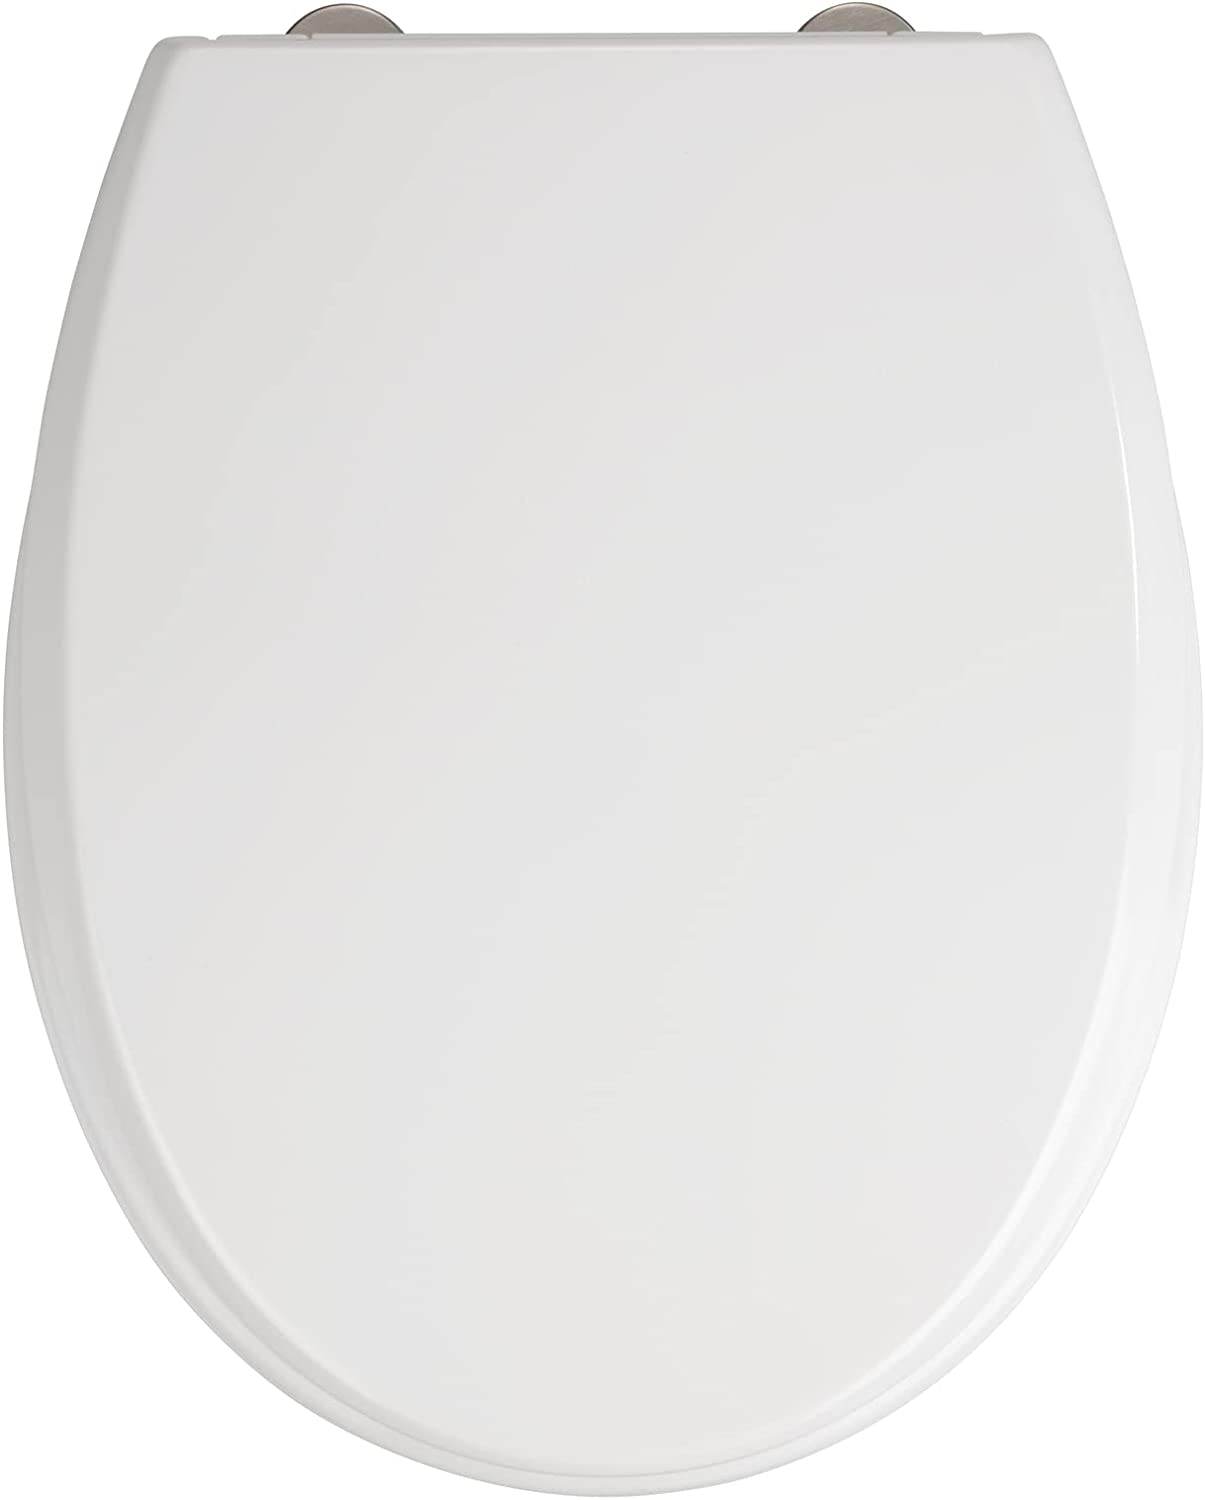 WC-Sitz Furlo, Toilettensitz mit Absenkautomatik, WC-Deckel mit Fix-Clip Hygiene-Befestigung, aus antibakteriellem Duroplast, Weiß